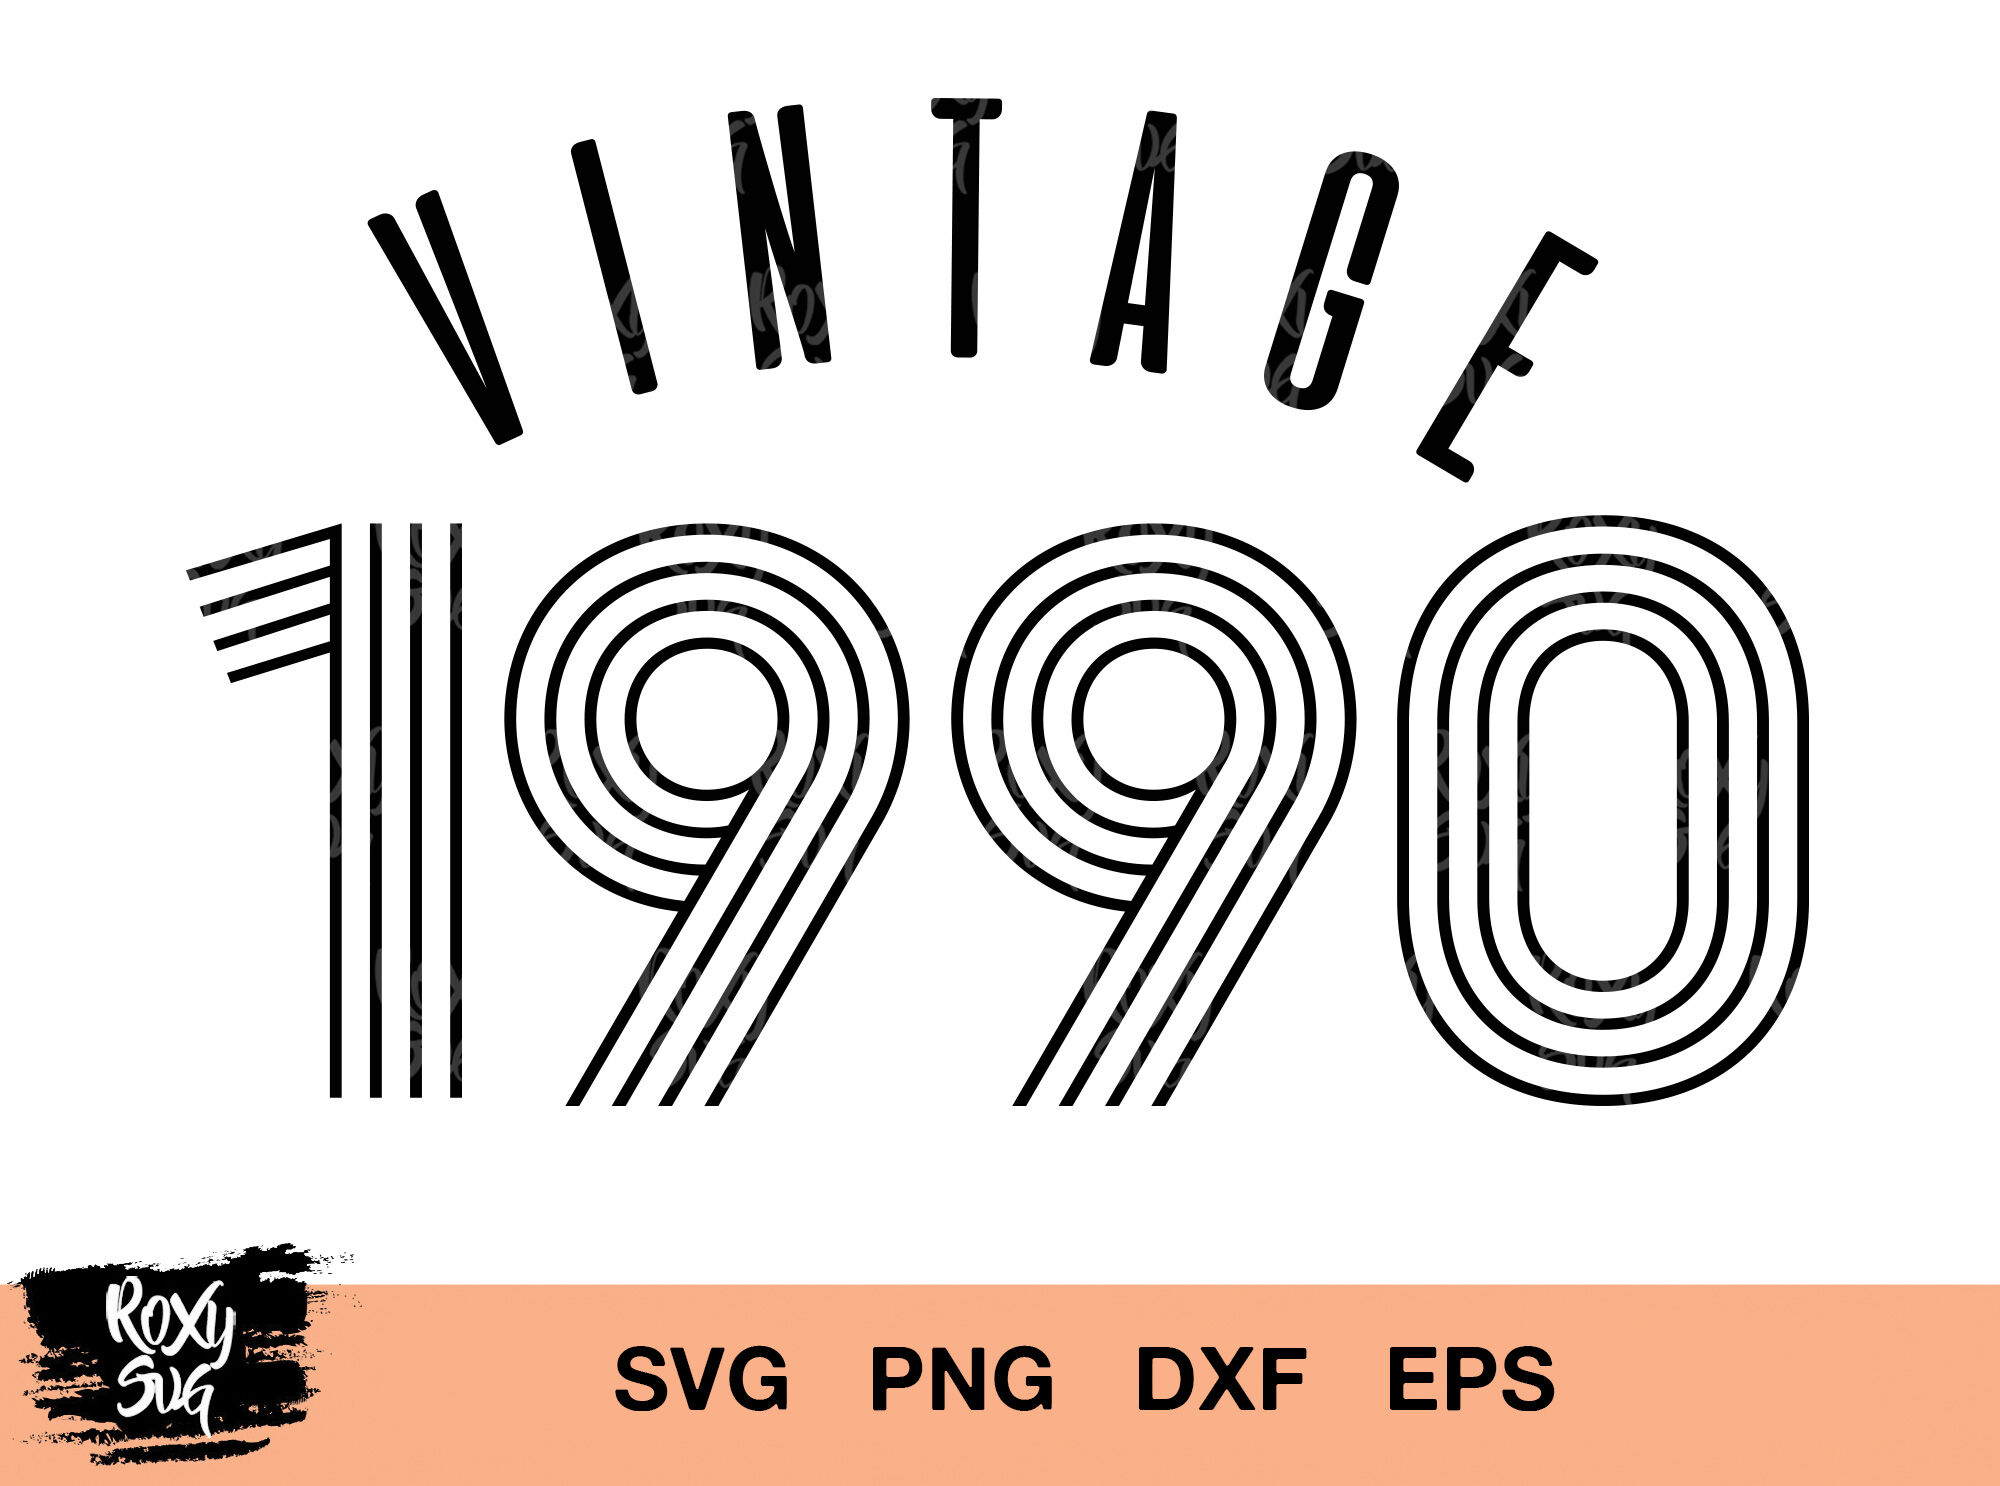 Download Svg File Vintage 1990 Svg Background